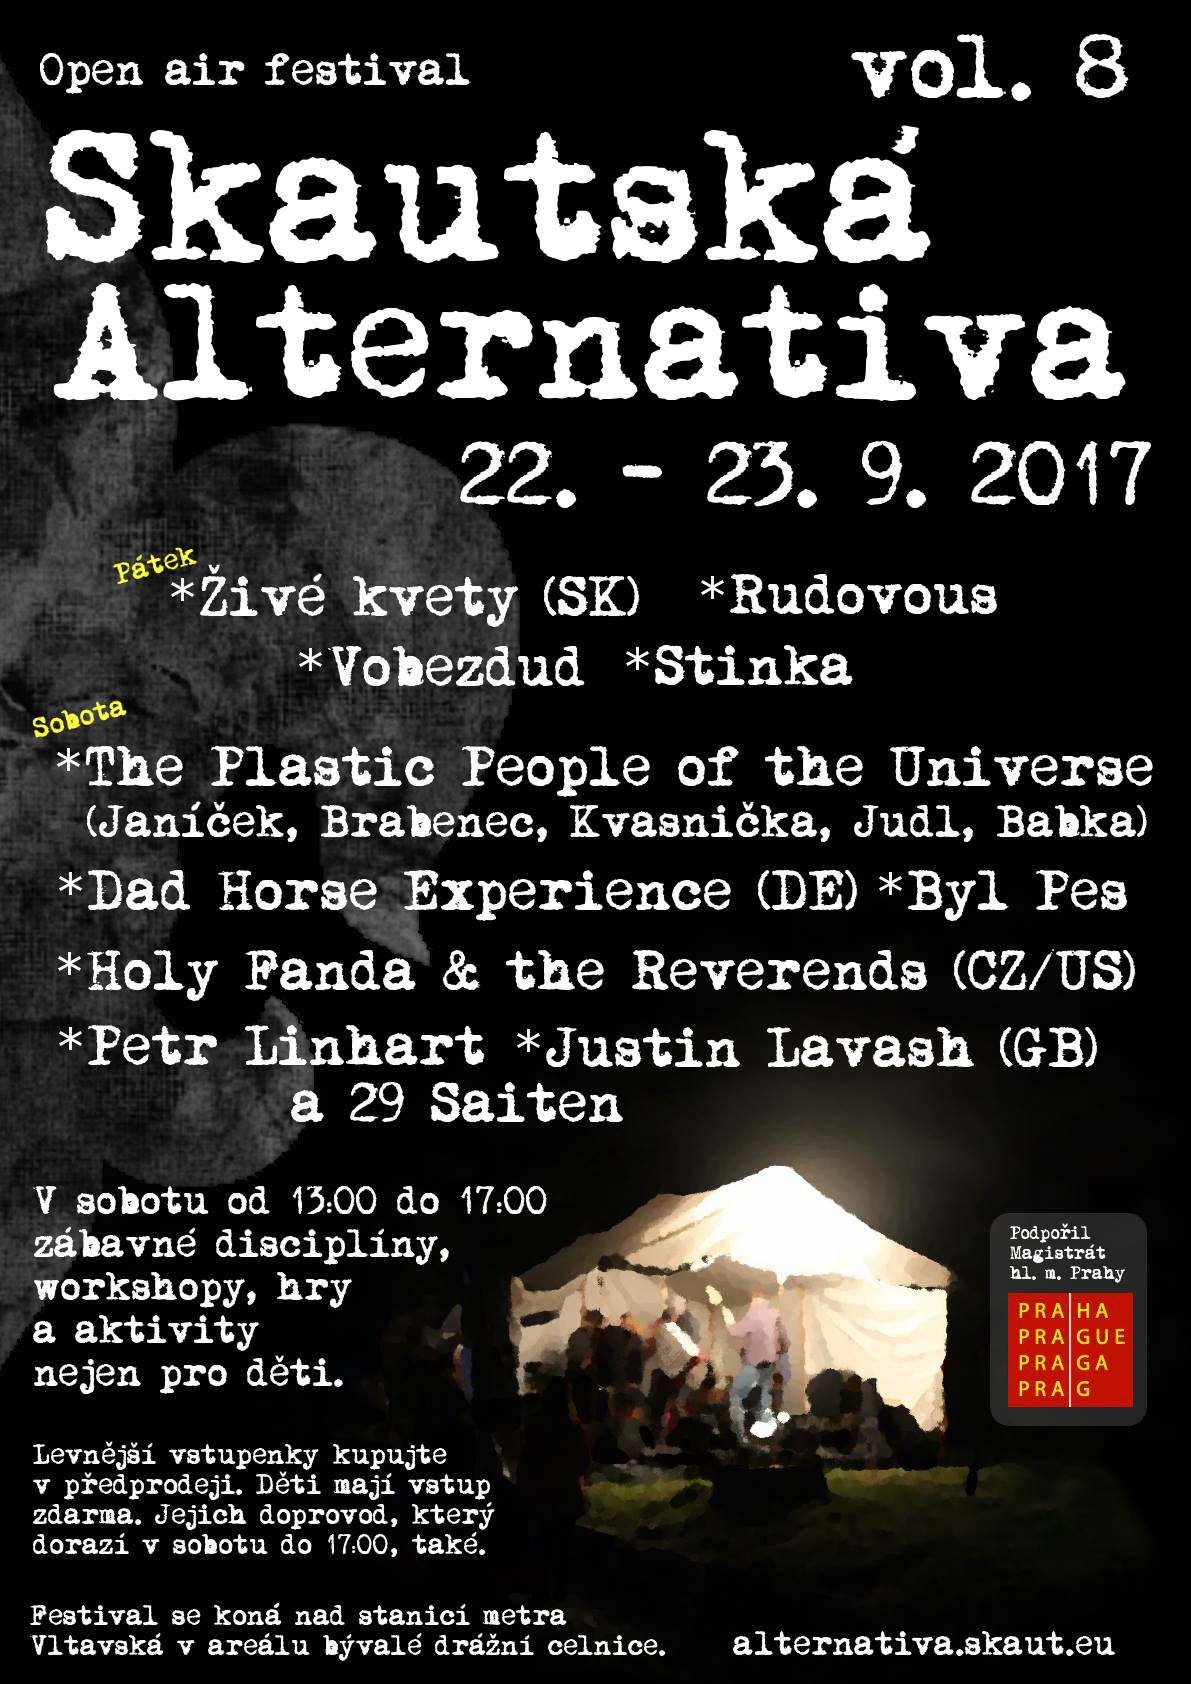 piatok 22.september 2017, Praha, Skautská alternativa vol. 8 (vlaková stanica Praha-Bubny, nad zastávkou metra Vltavská)